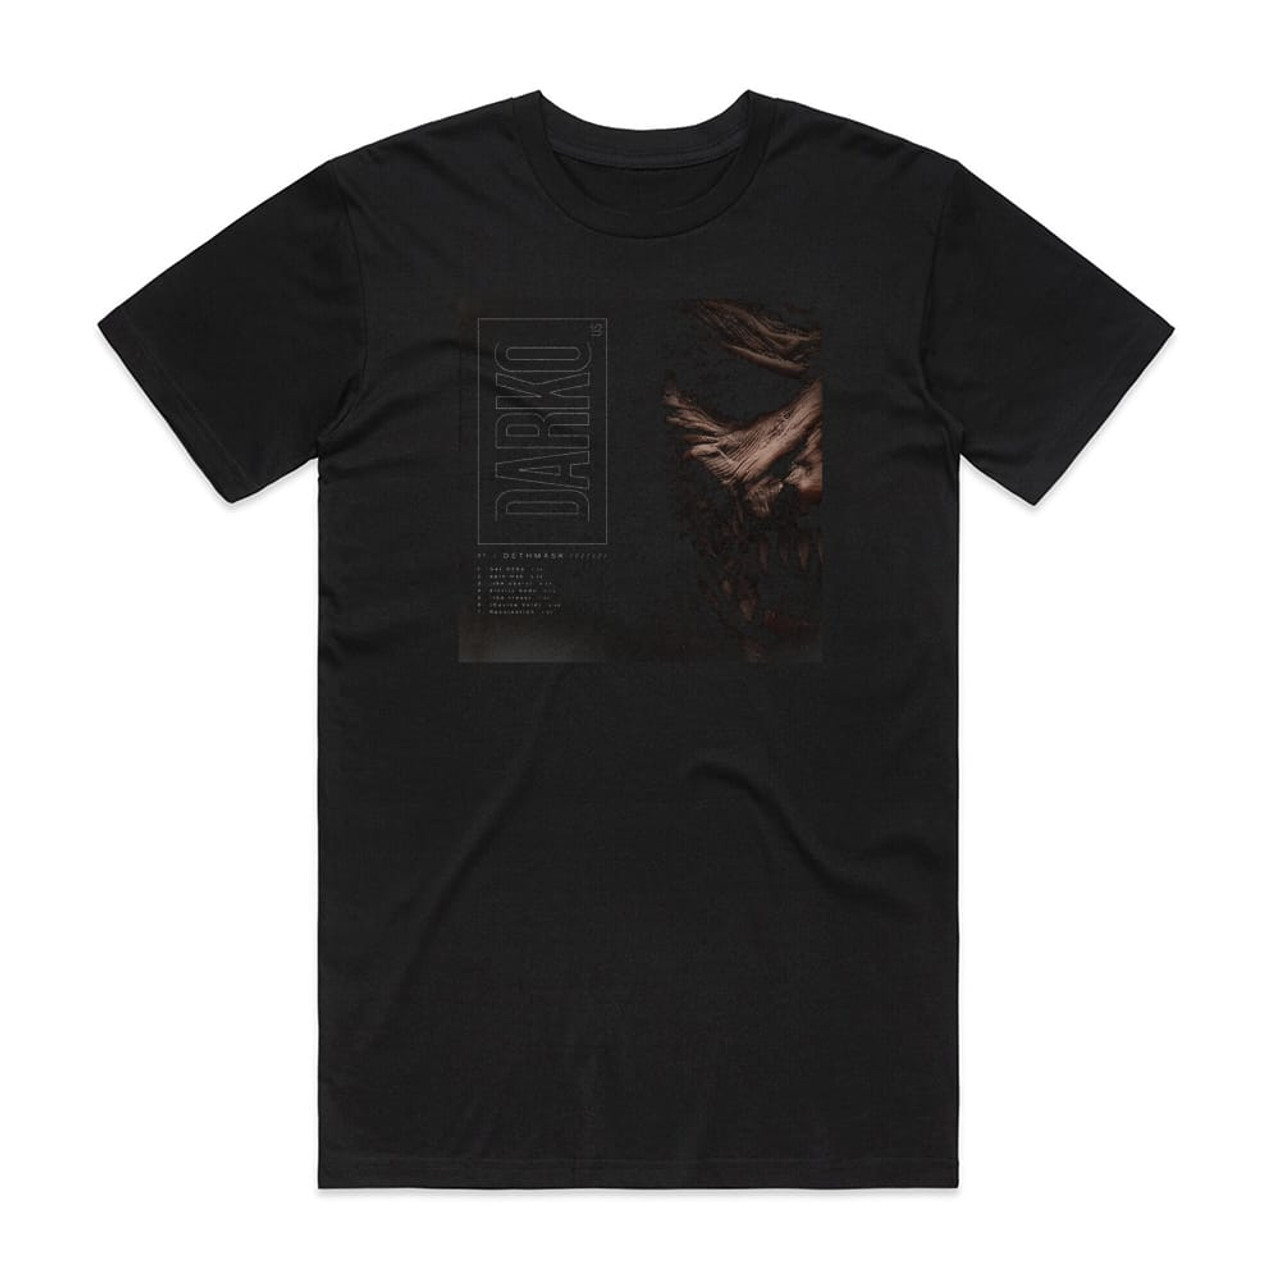 Darko US Pt 1 Dethmask Album Cover T-Shirt Black